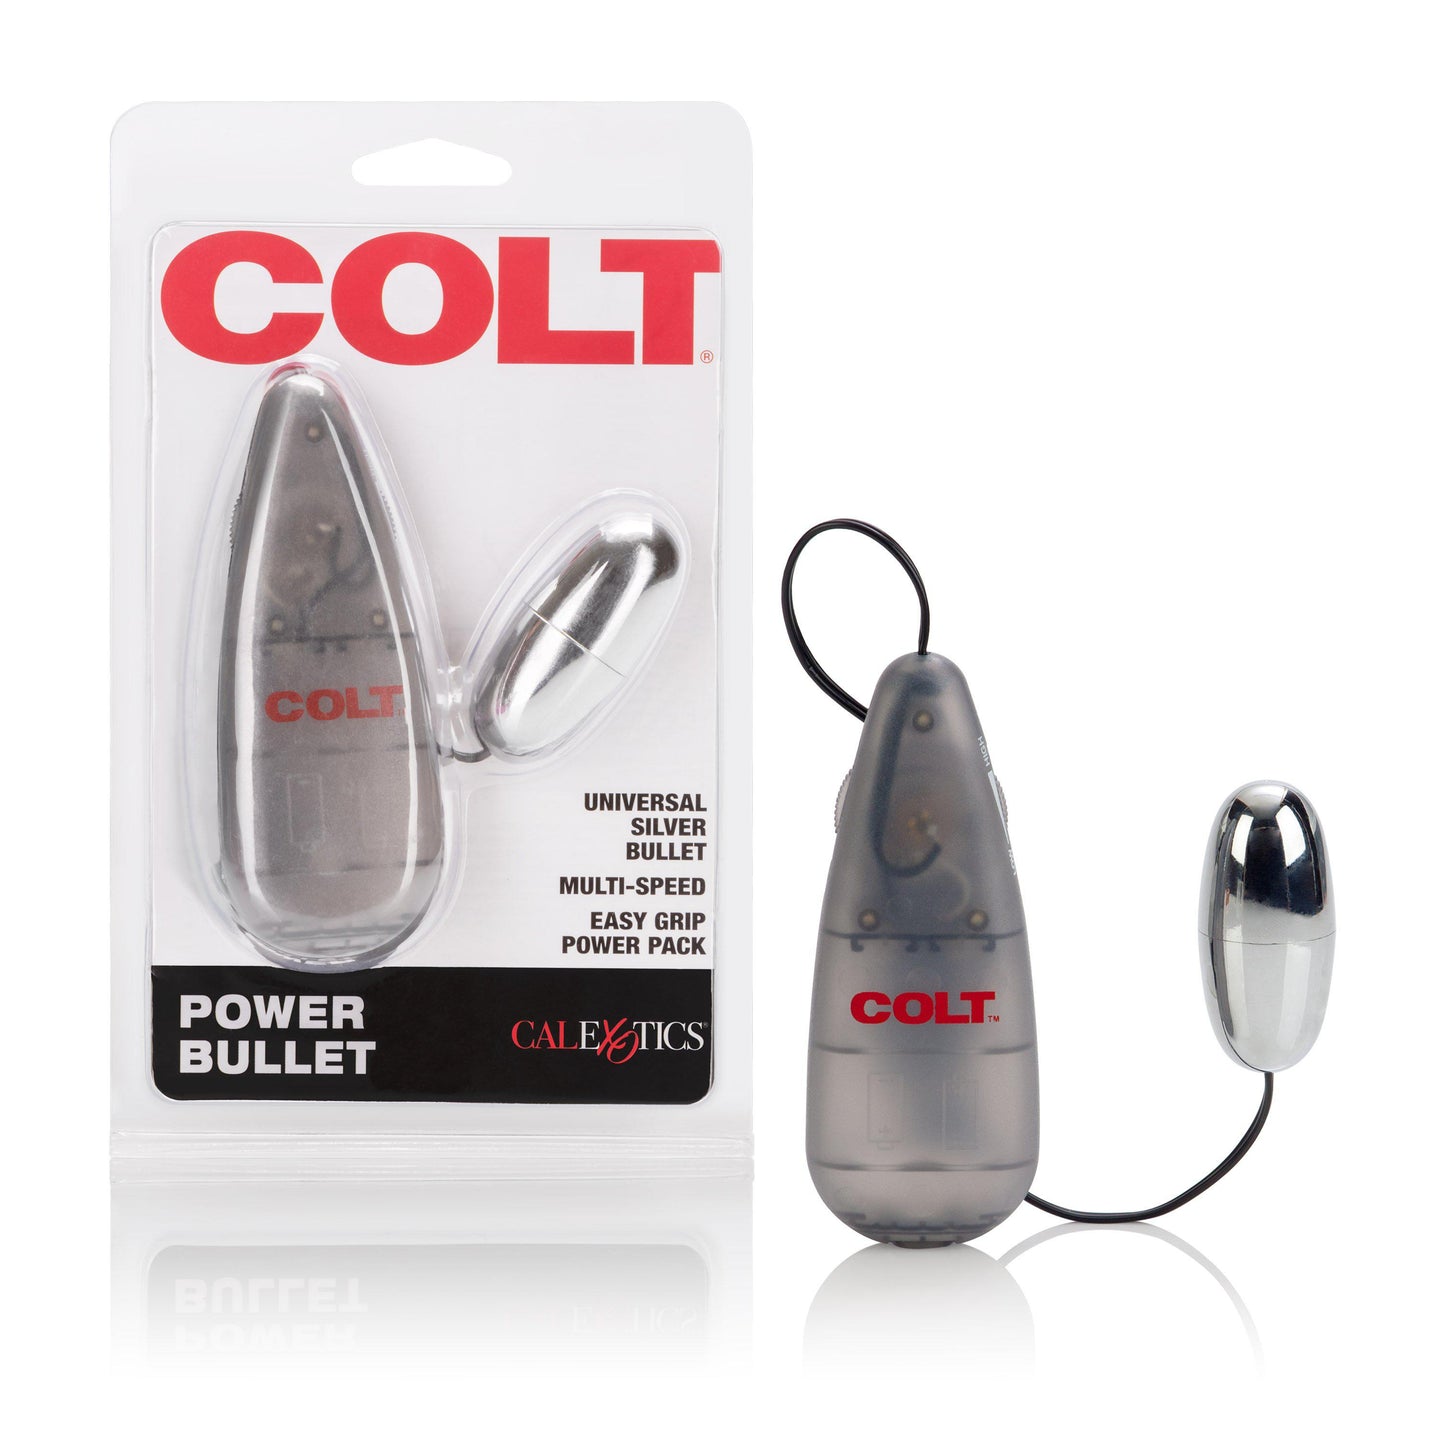 Colt M/s Power Pak Bullet